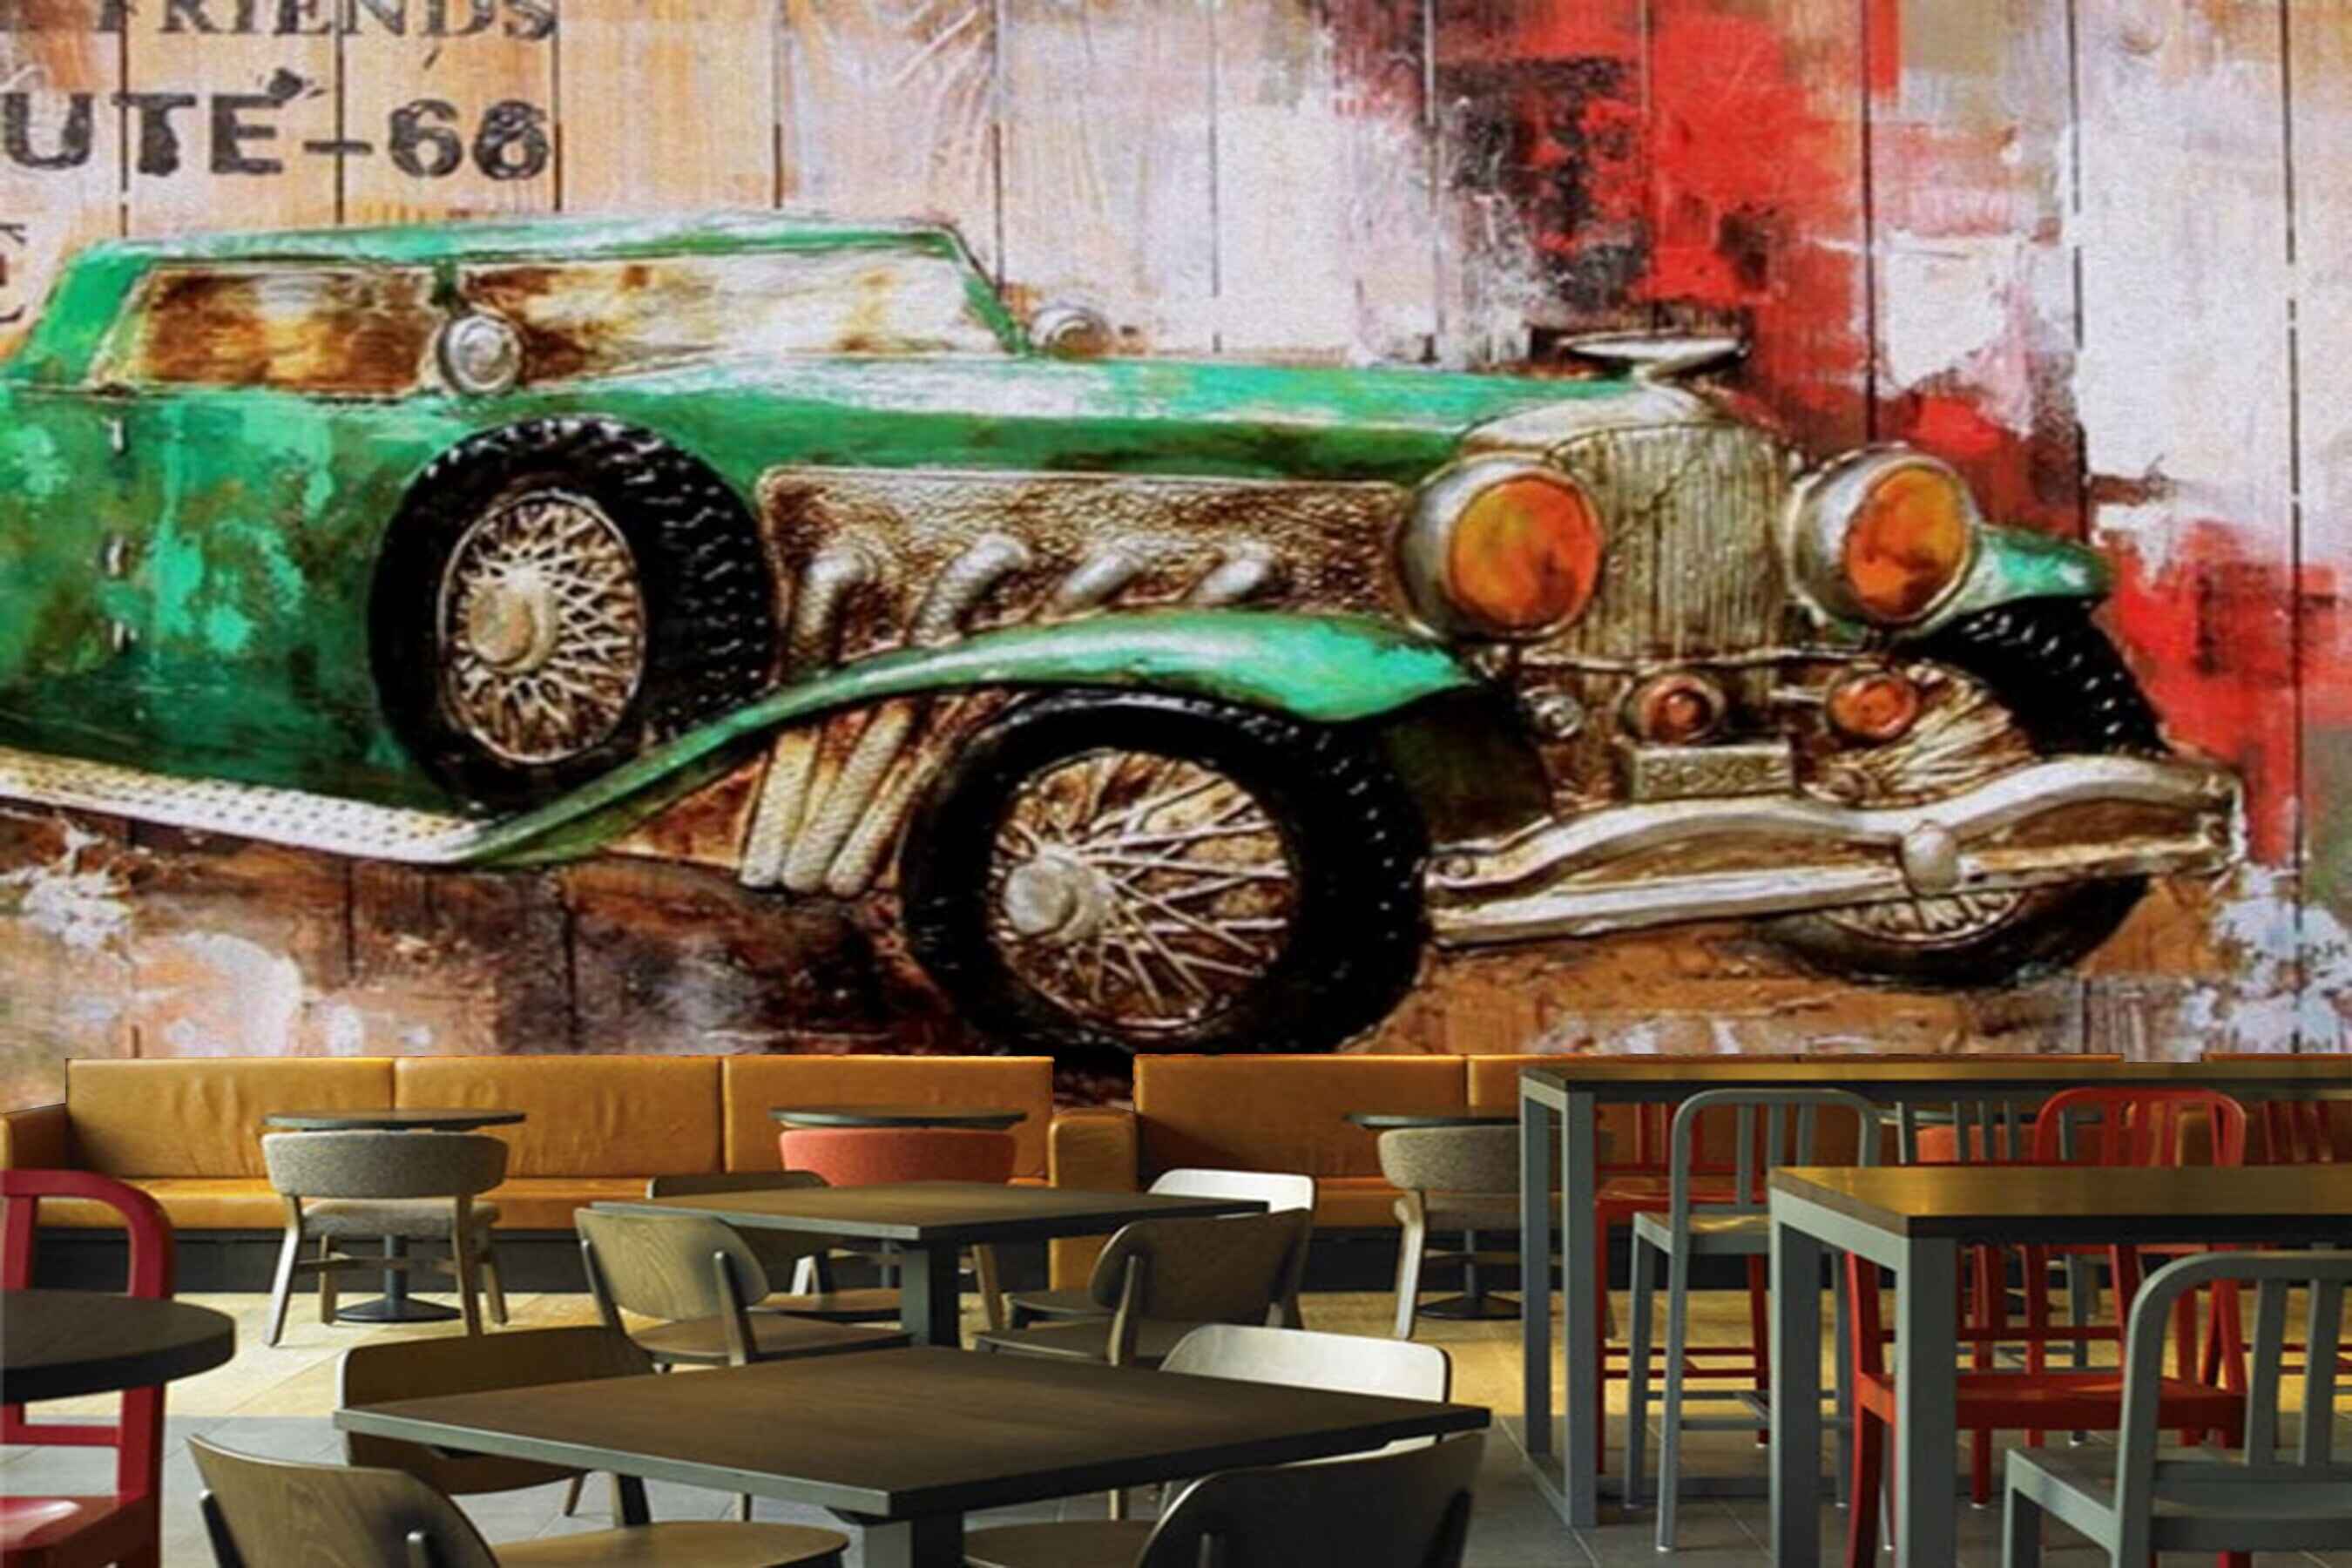 Avikalp MWZ3026 Green Car Wooden Board HD Wallpaper for Cafe Restaurant